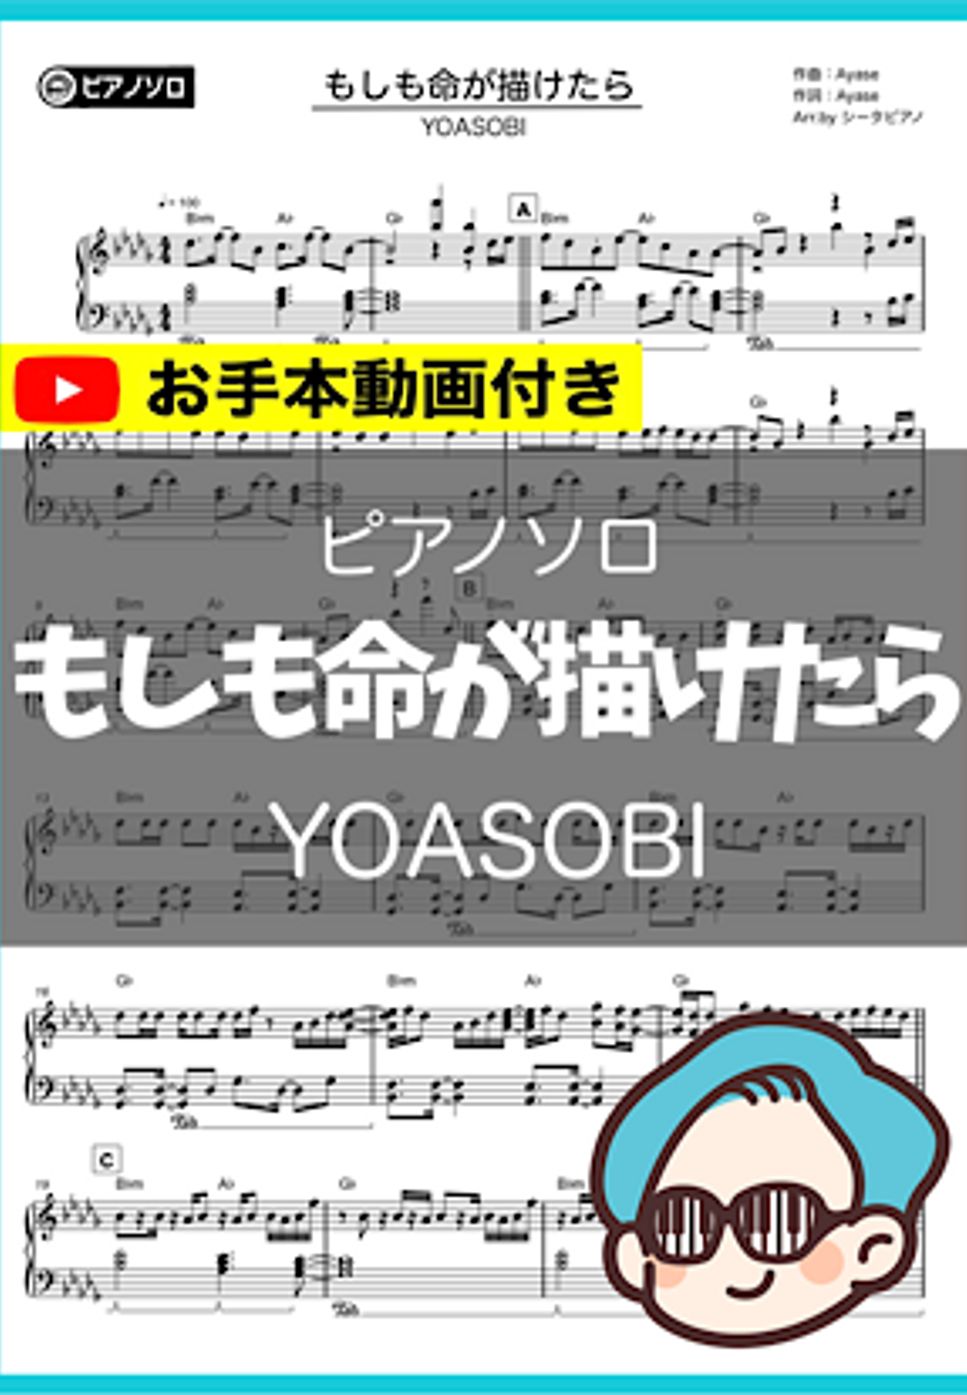 YOASOBI - もしも命が描けたら by シータピアノ